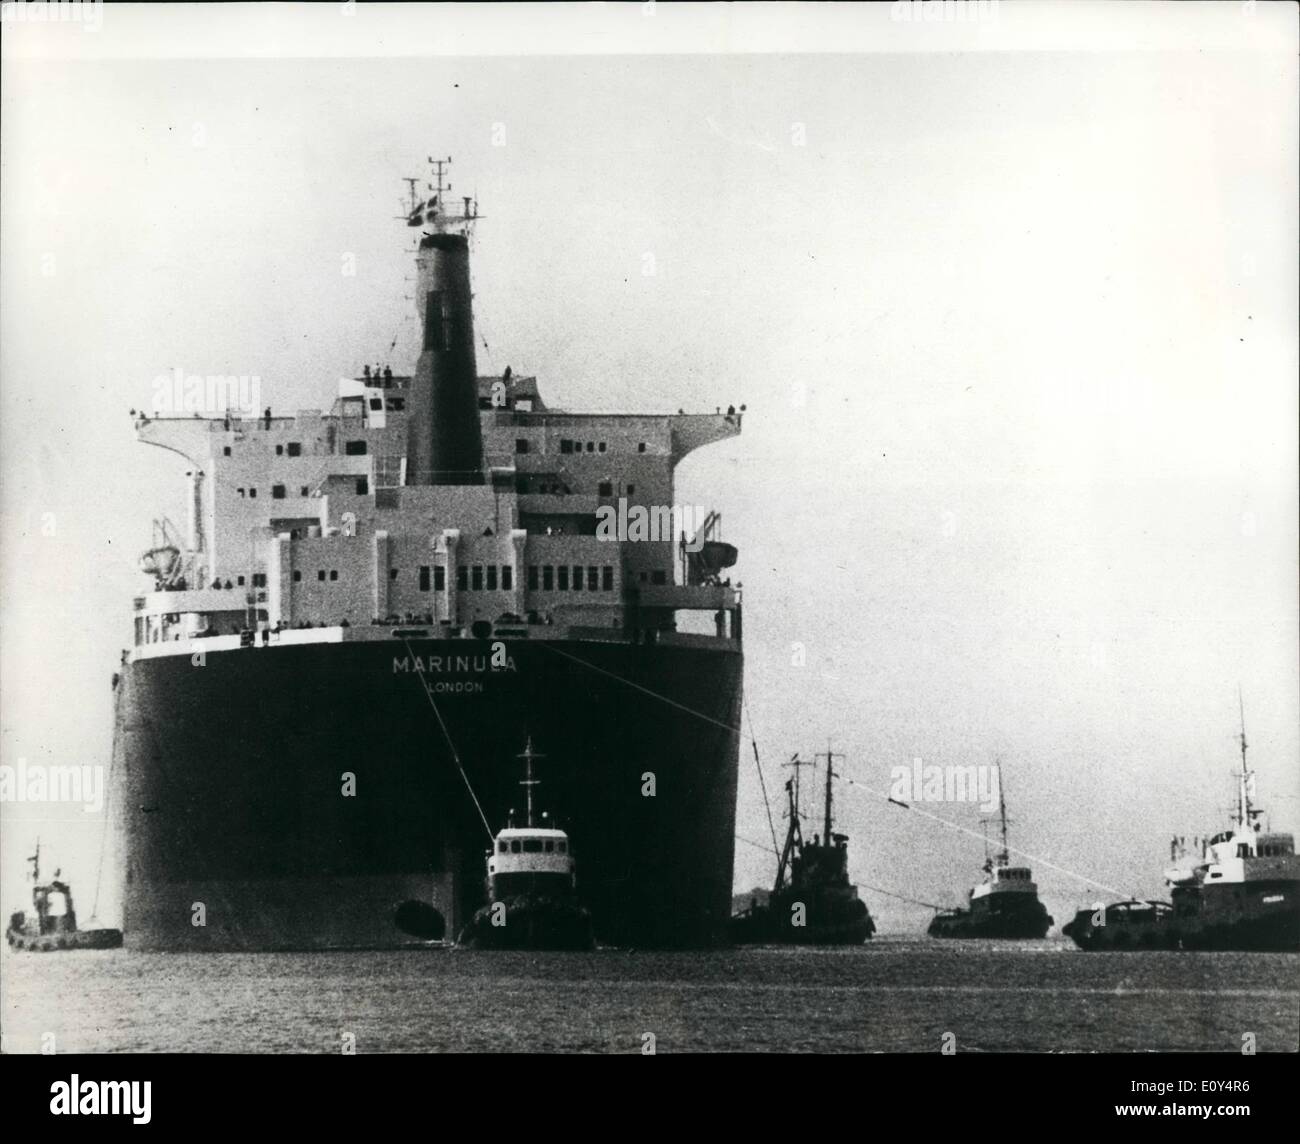 08 août, 1968 - plus grand navire jamais construit en Scandinavie pour être livré à Shell. : l'Lindoe Shipbuilding Company à l'île de Fionie, au Danemark, tiendra aujourd'hui (vendredi) offrent le plus grand navire jamais construit en Scandinavie, à Shell. Elle constitue la "arinula' un pétrolier de 196 000 tonnes de vu ici au cours d'un essai de la voile. Banque D'Images